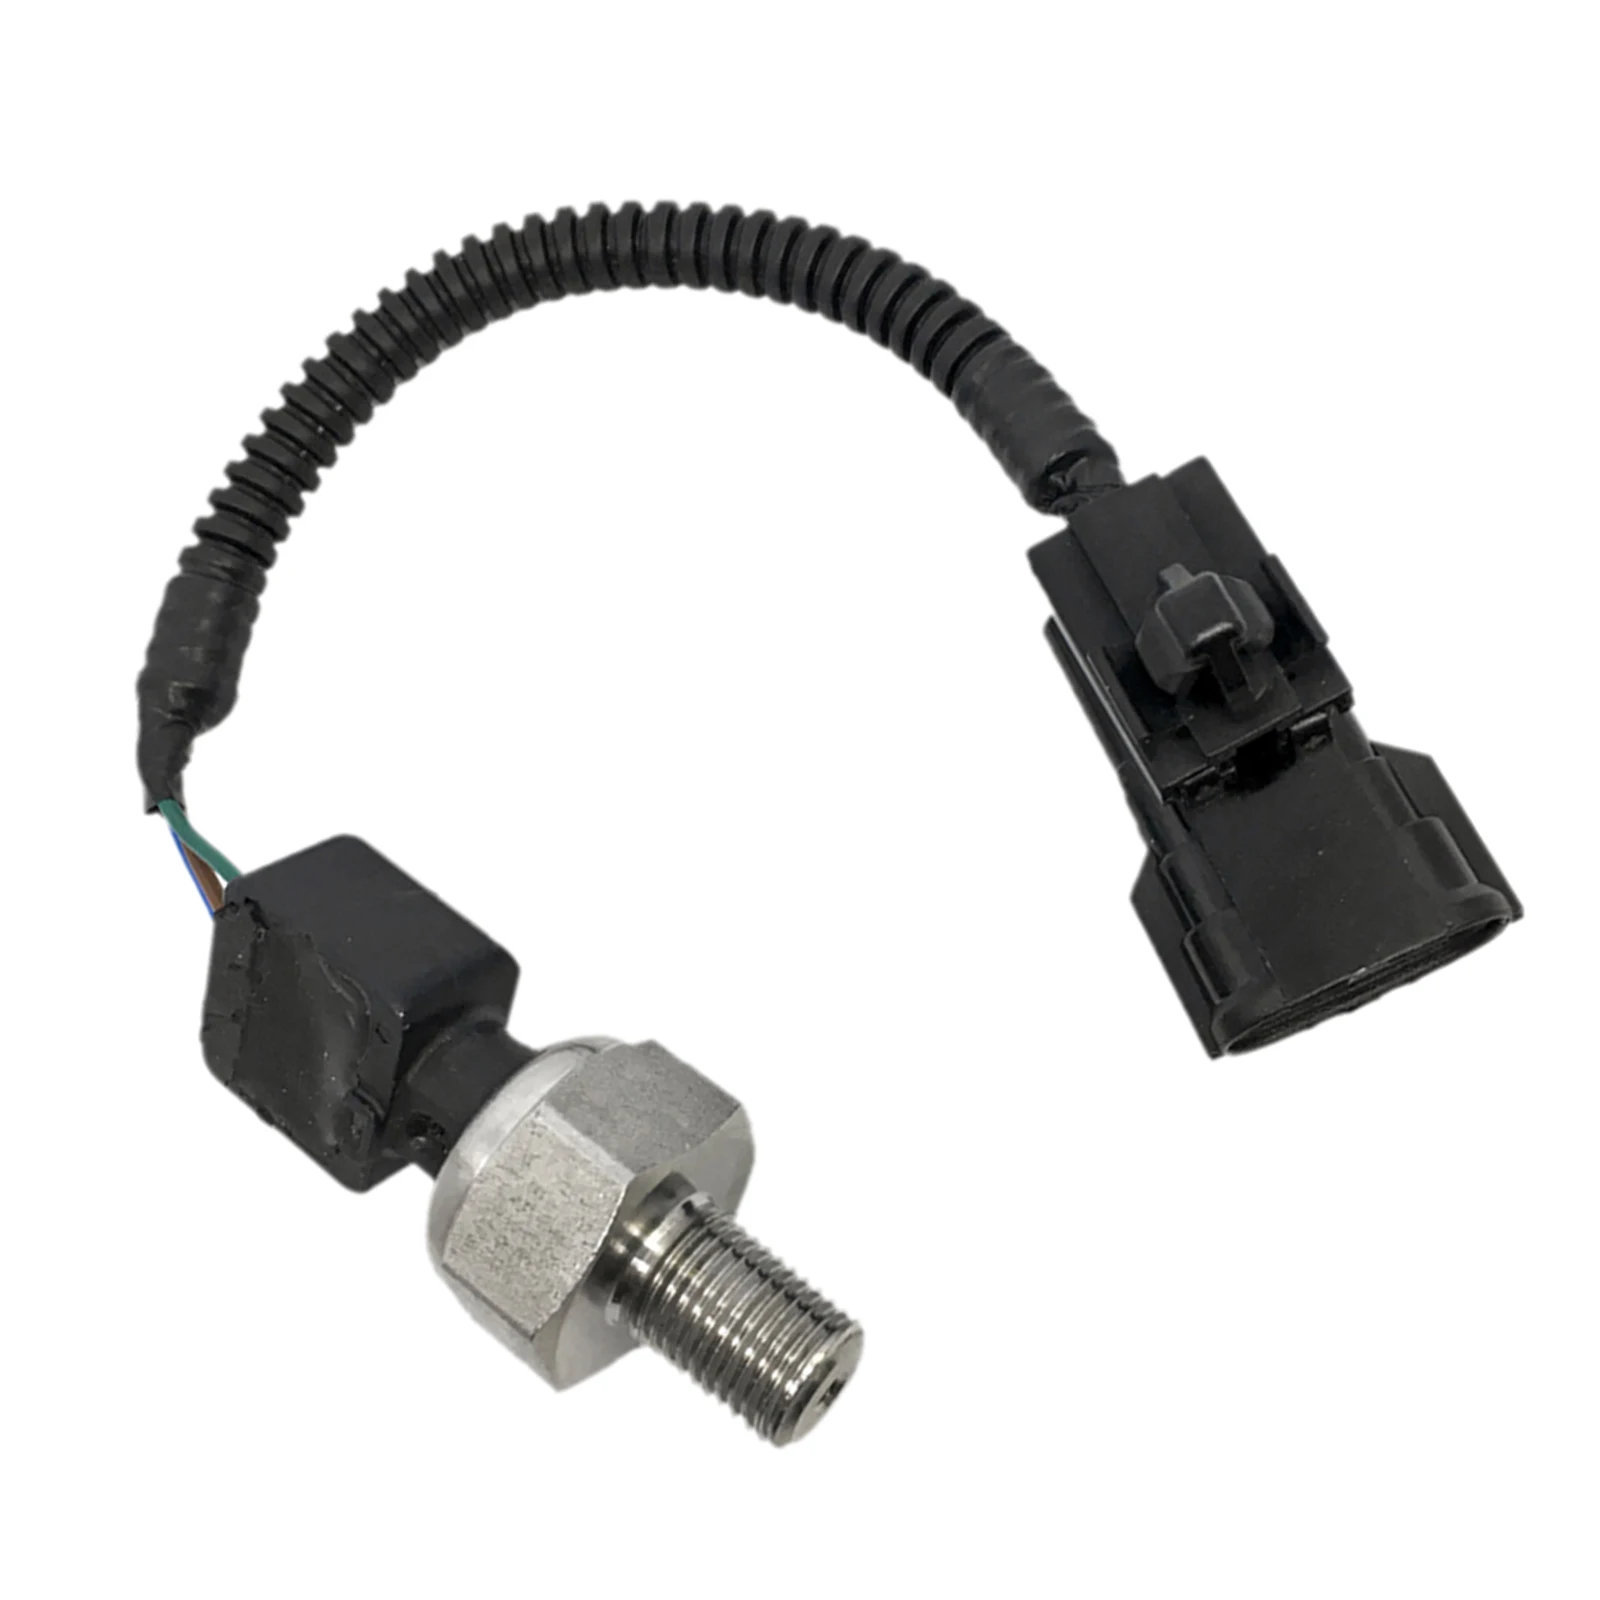 Zreneyfex Fuel Pressure Sensor for Lexus IS250 IS350 GS300 GS430 89458-30010 